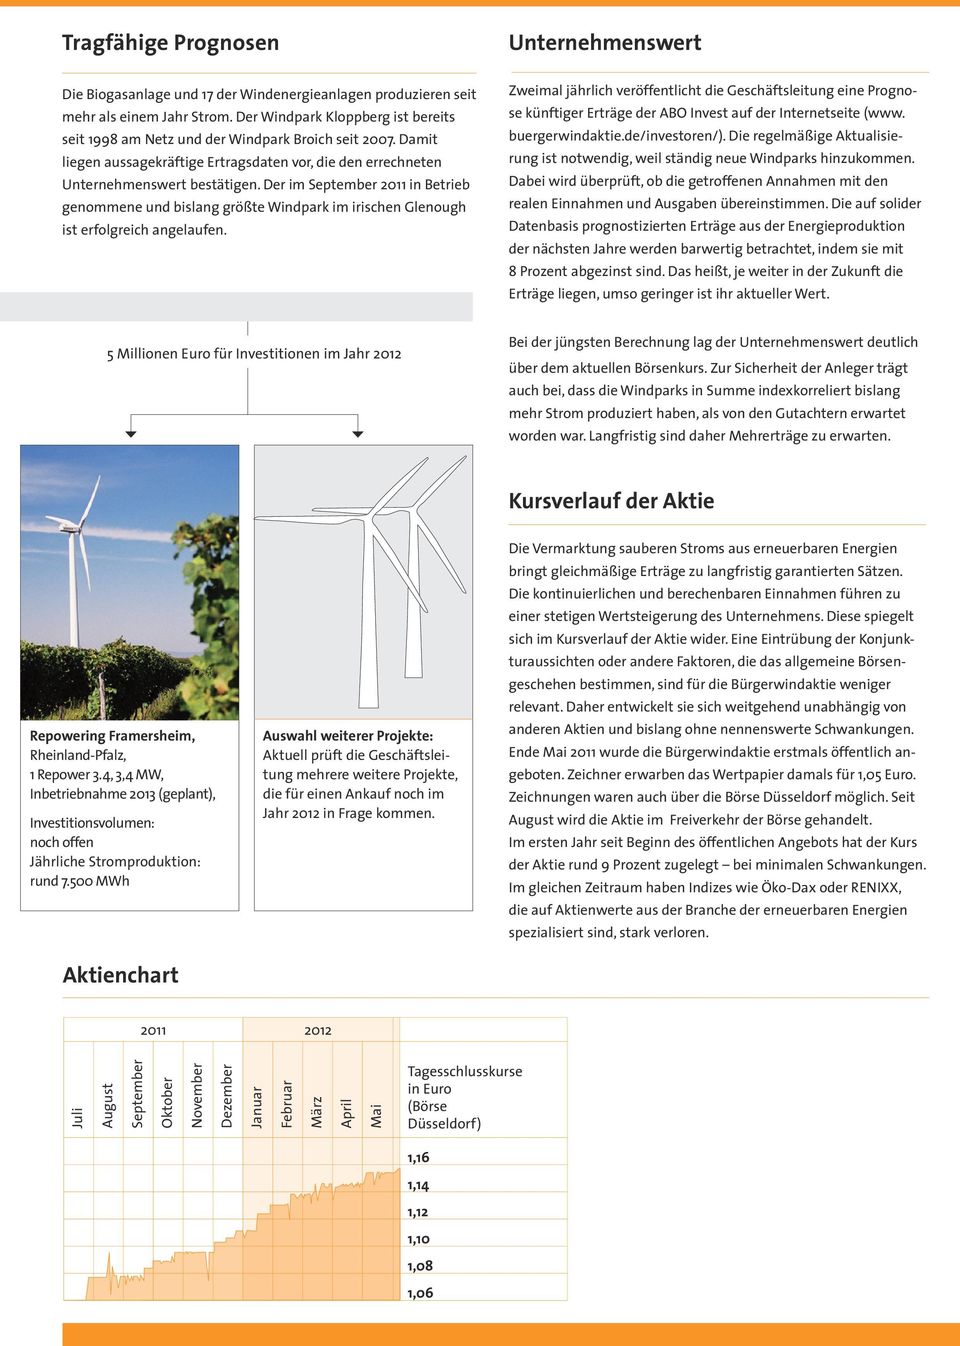 Der im September 2011 in Betrieb genommene und bislang größte Windpark im irischen Glenough ist erfolgreich angelaufen.